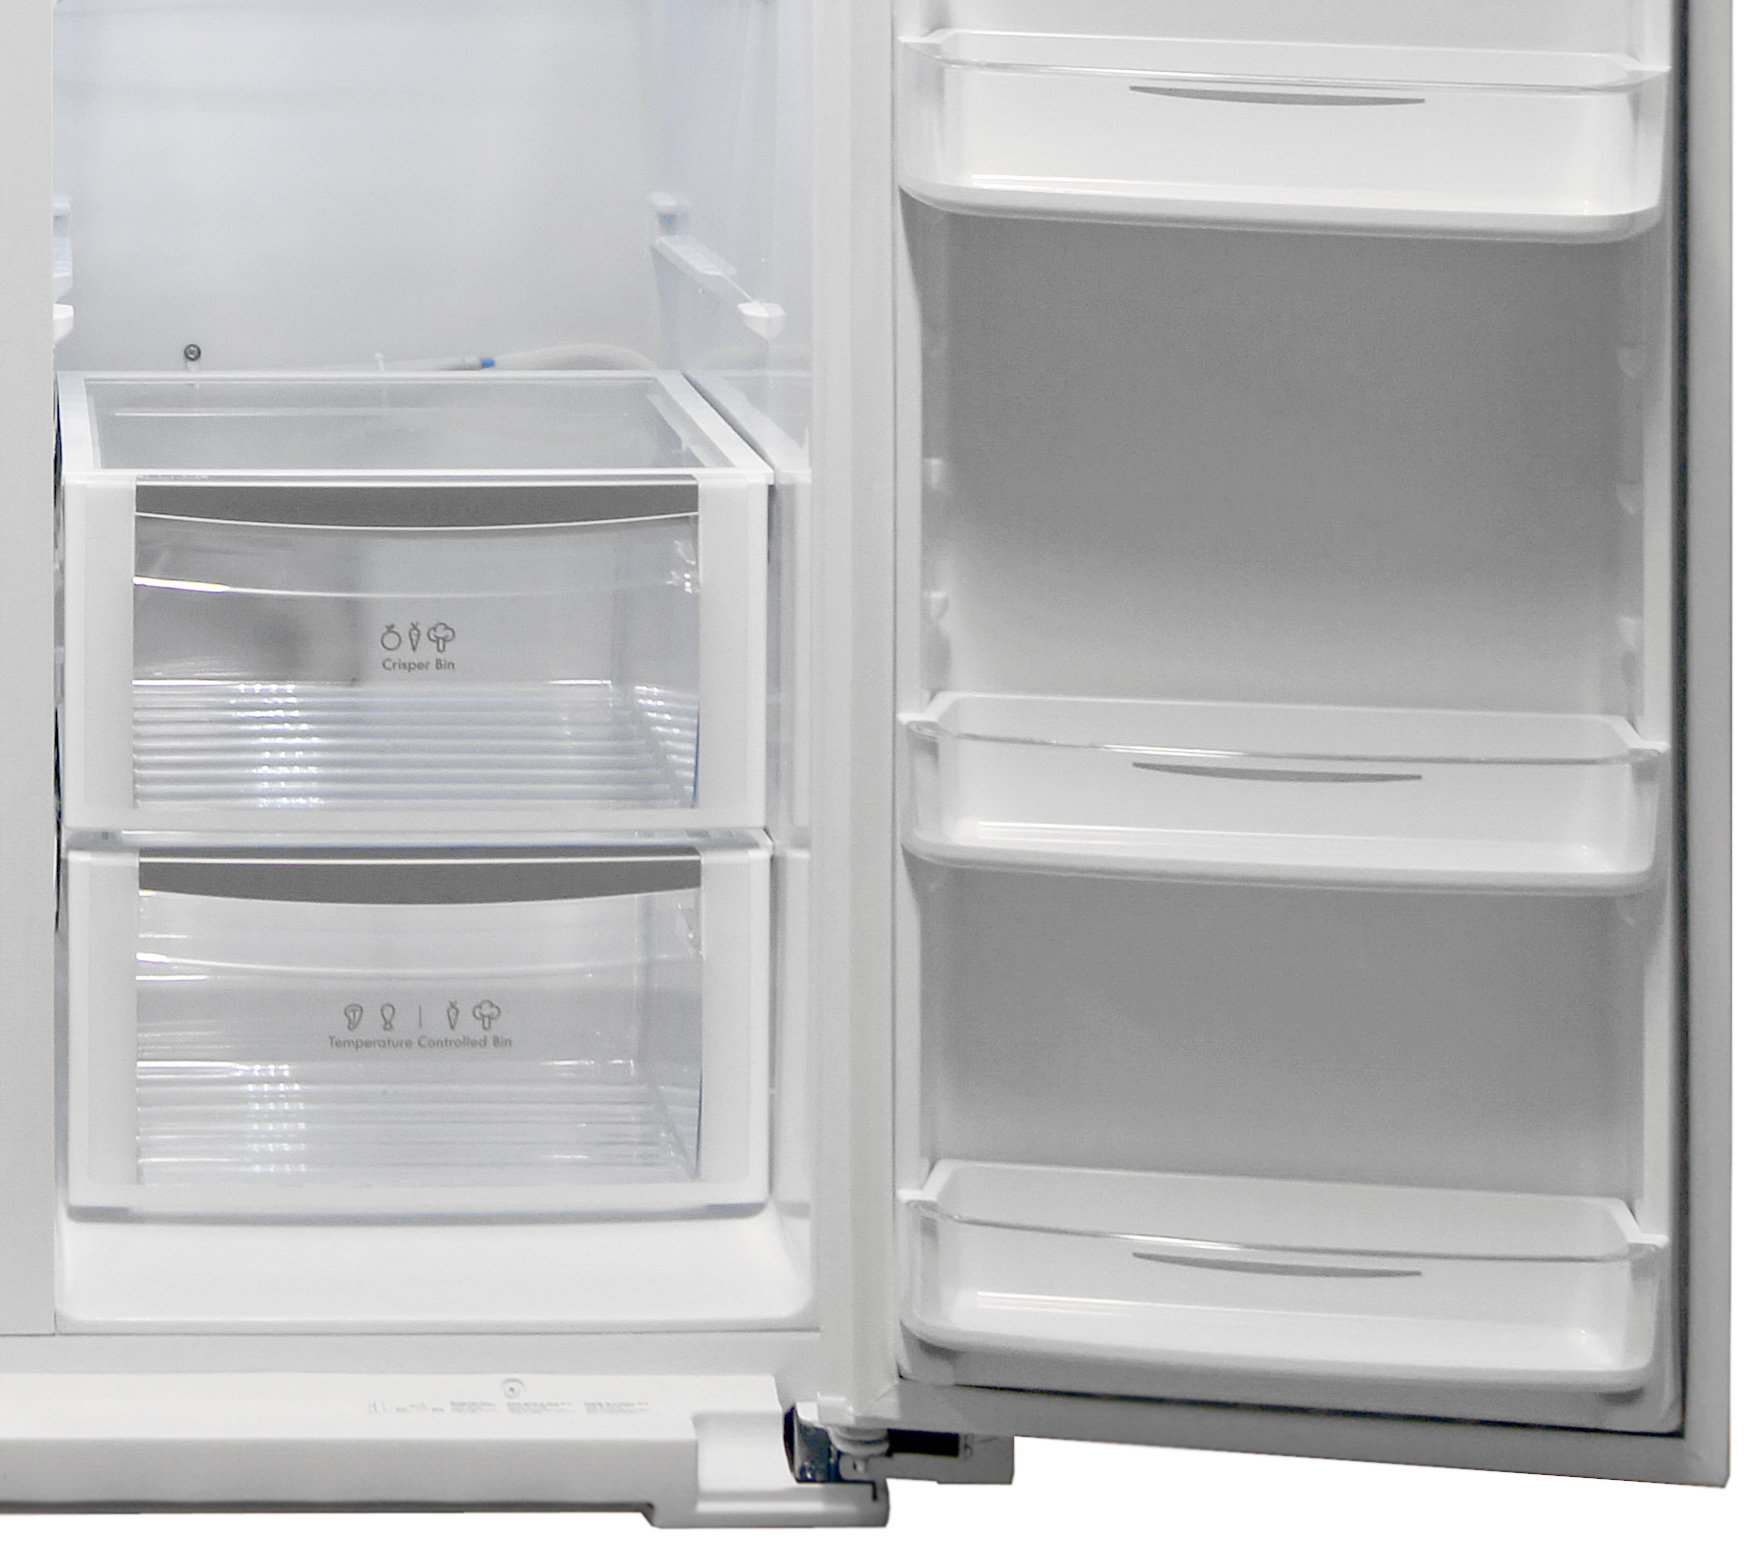 kenmore elite refrigerator manual temperature settings